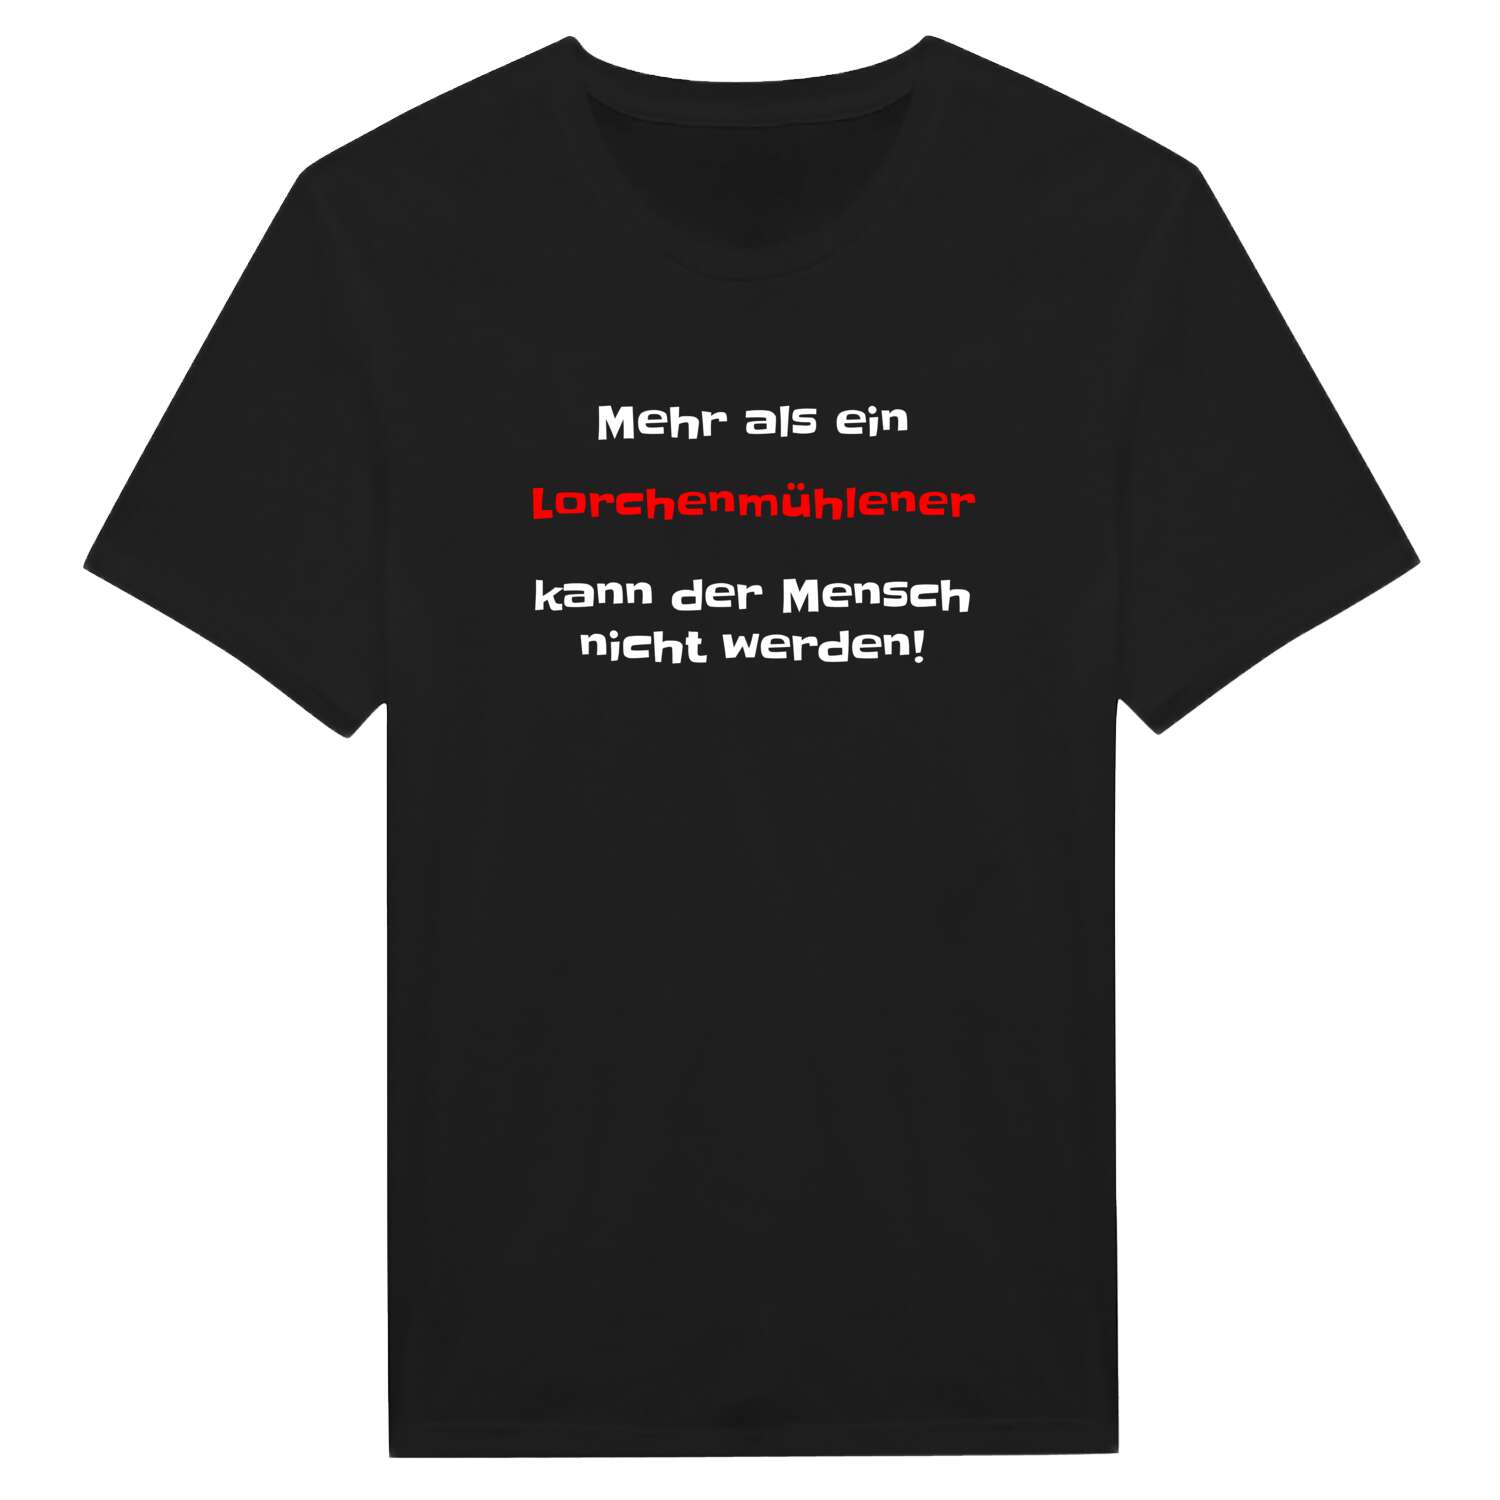 Lorchenmühle T-Shirt »Mehr als ein«